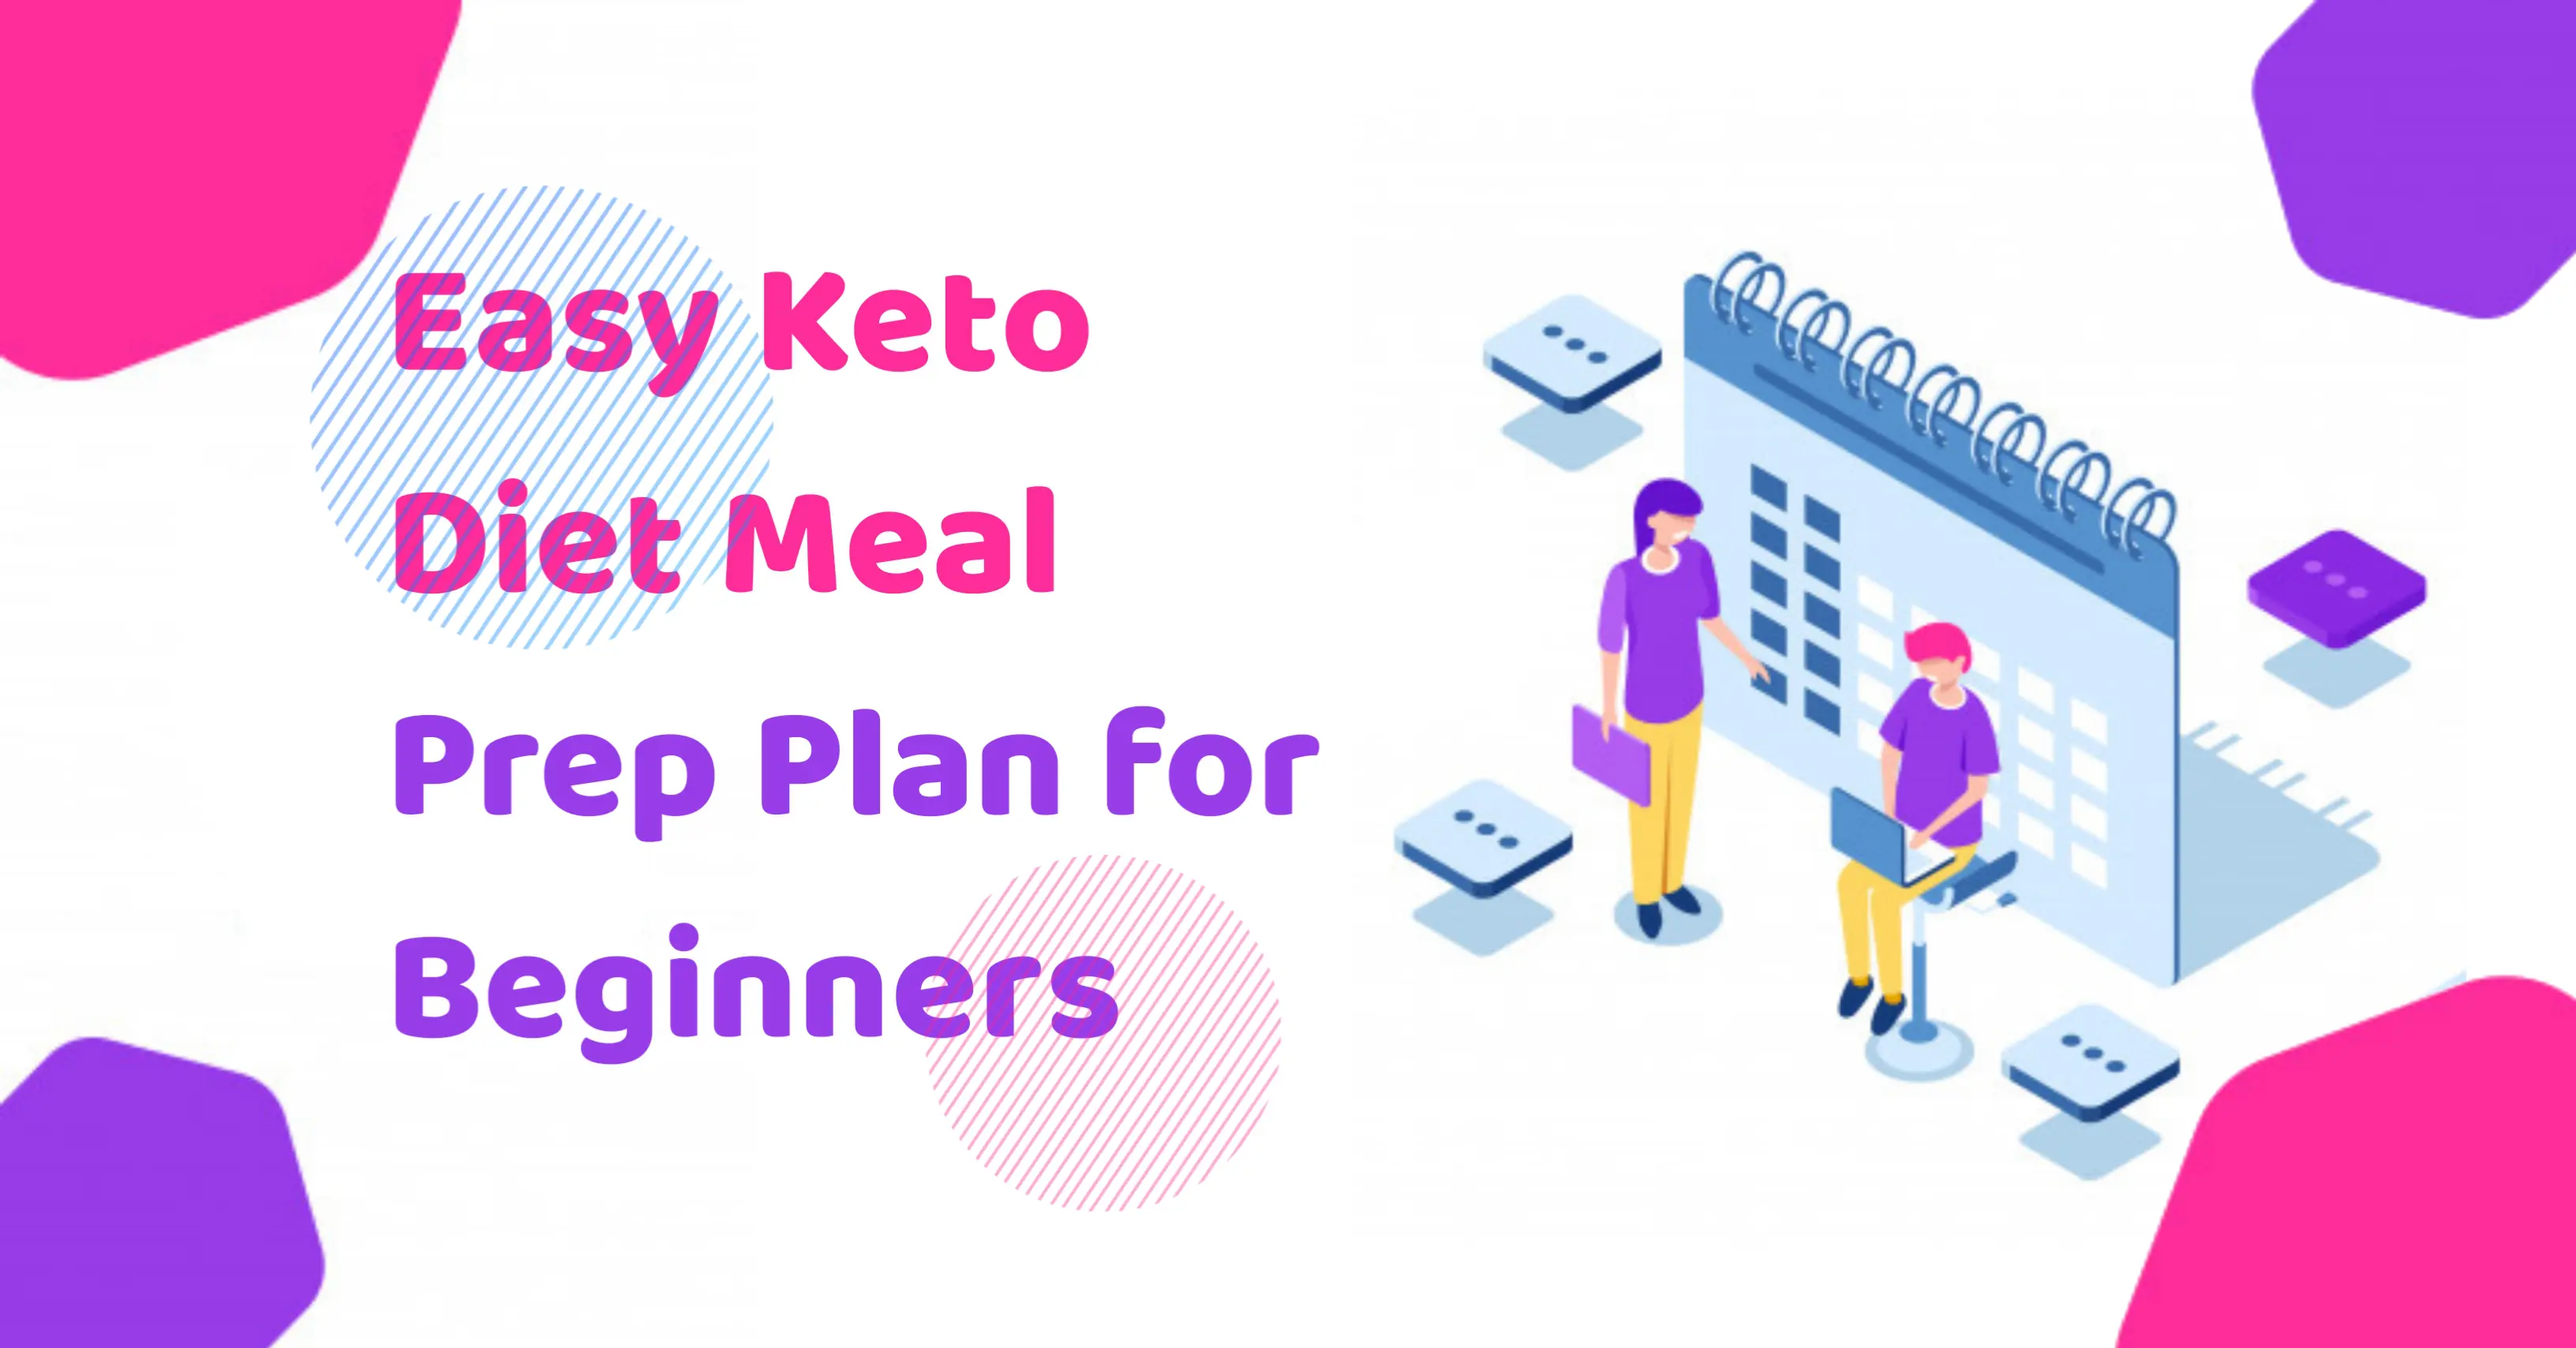 Easy Keto Diet Meal Prep Plan For Beginners